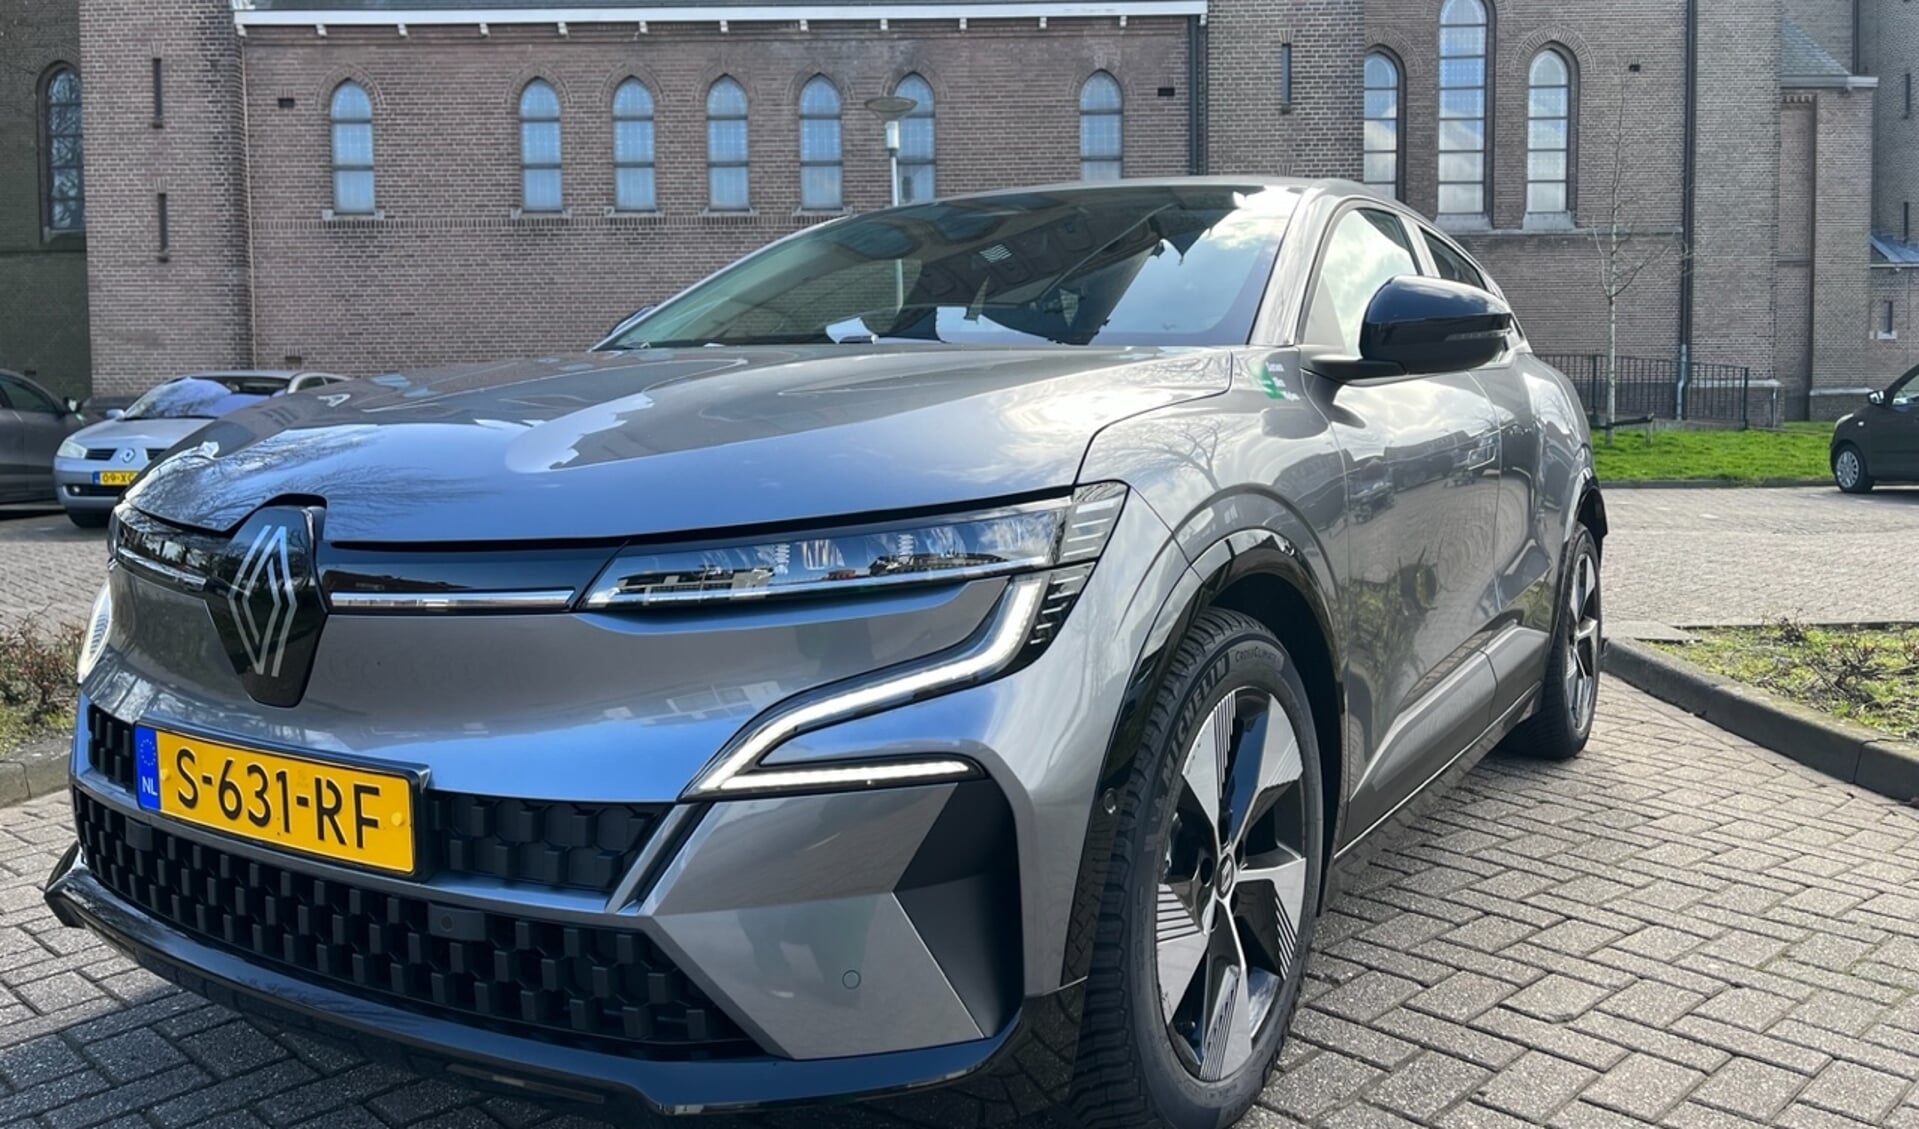 De gemeente Steenbergen meldt dat vanaf deze week in het centrum van Steenbergen en Dinteloord elektrische deelauto's staan die via OnzeAuto gehuurd kunnen worden.
Foto: OnzeAuto